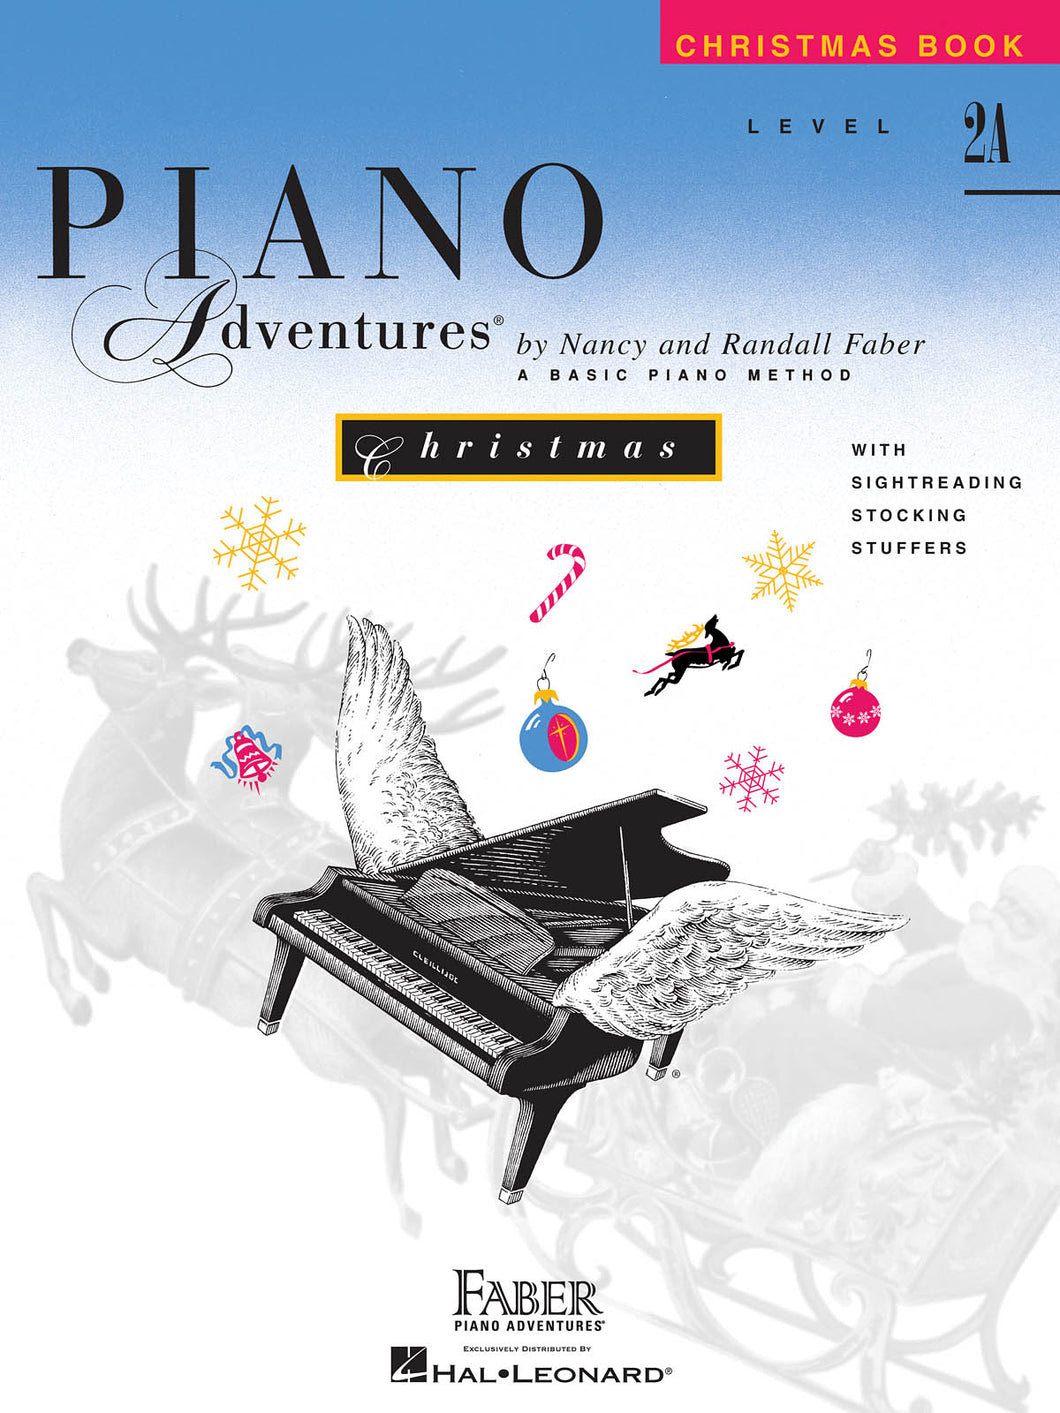 Faber Piano Adventures Christmas Level 2A